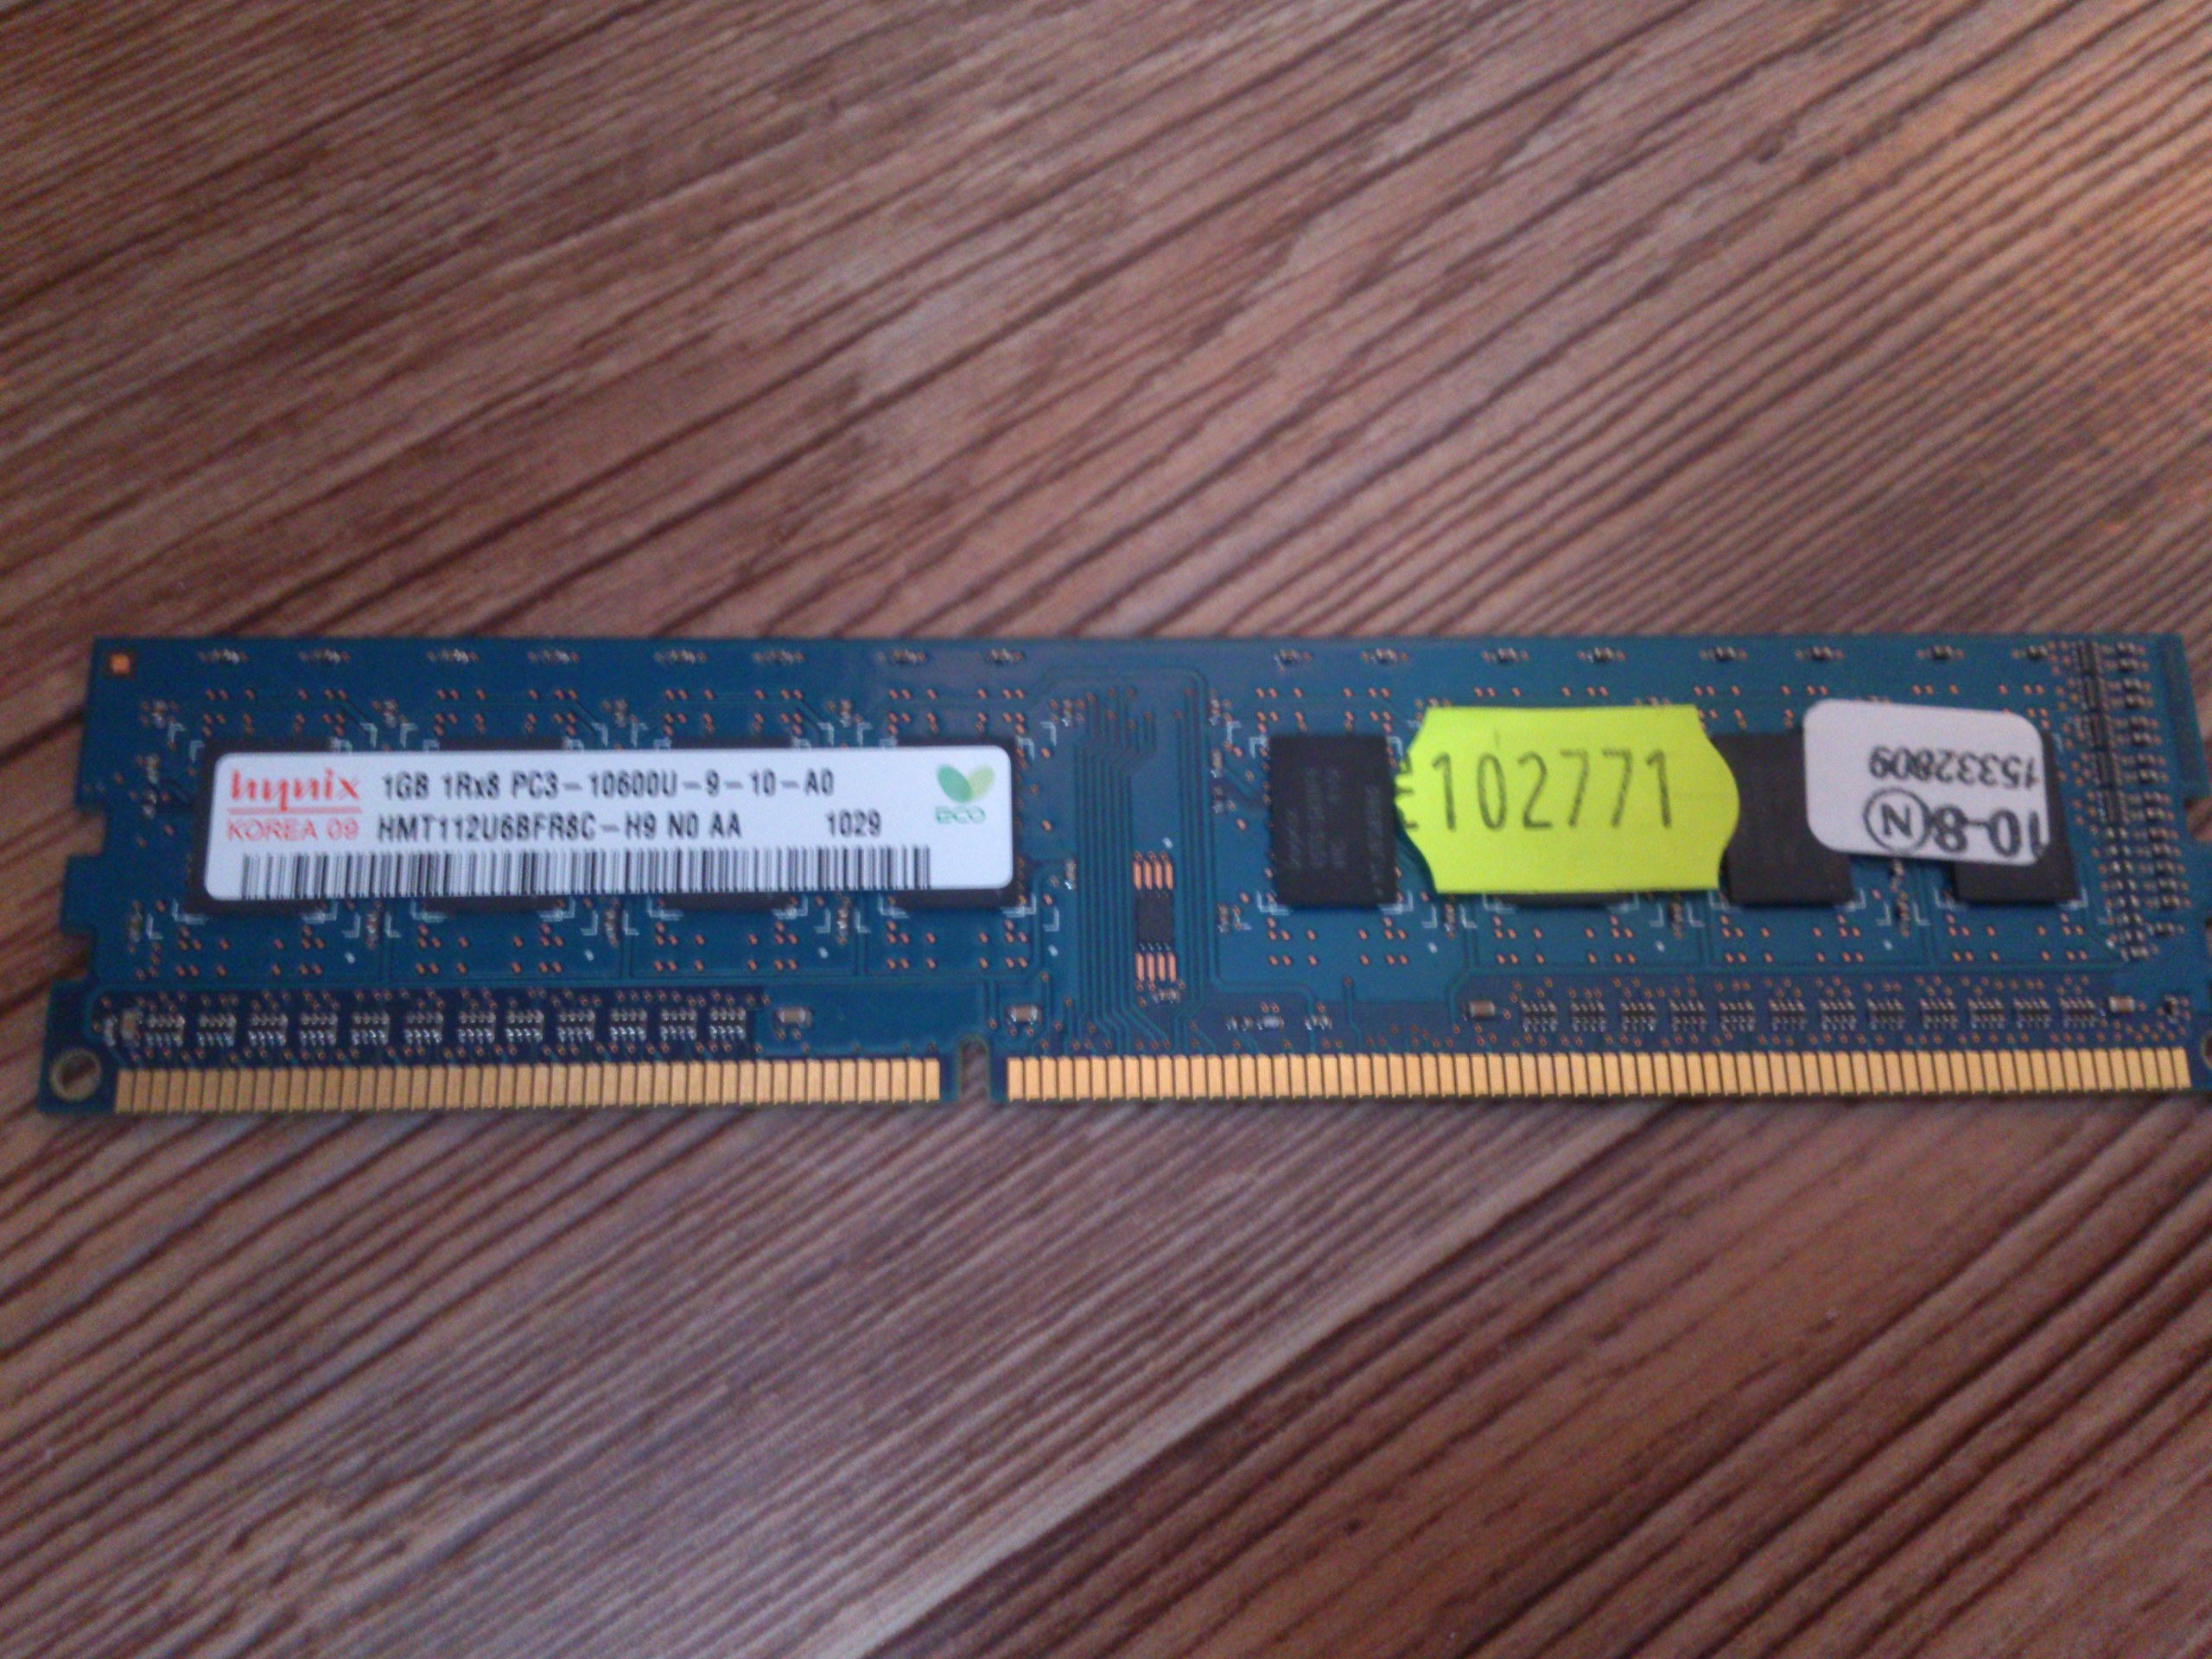 DDR2 2gb и DDR2 1gb - фотография